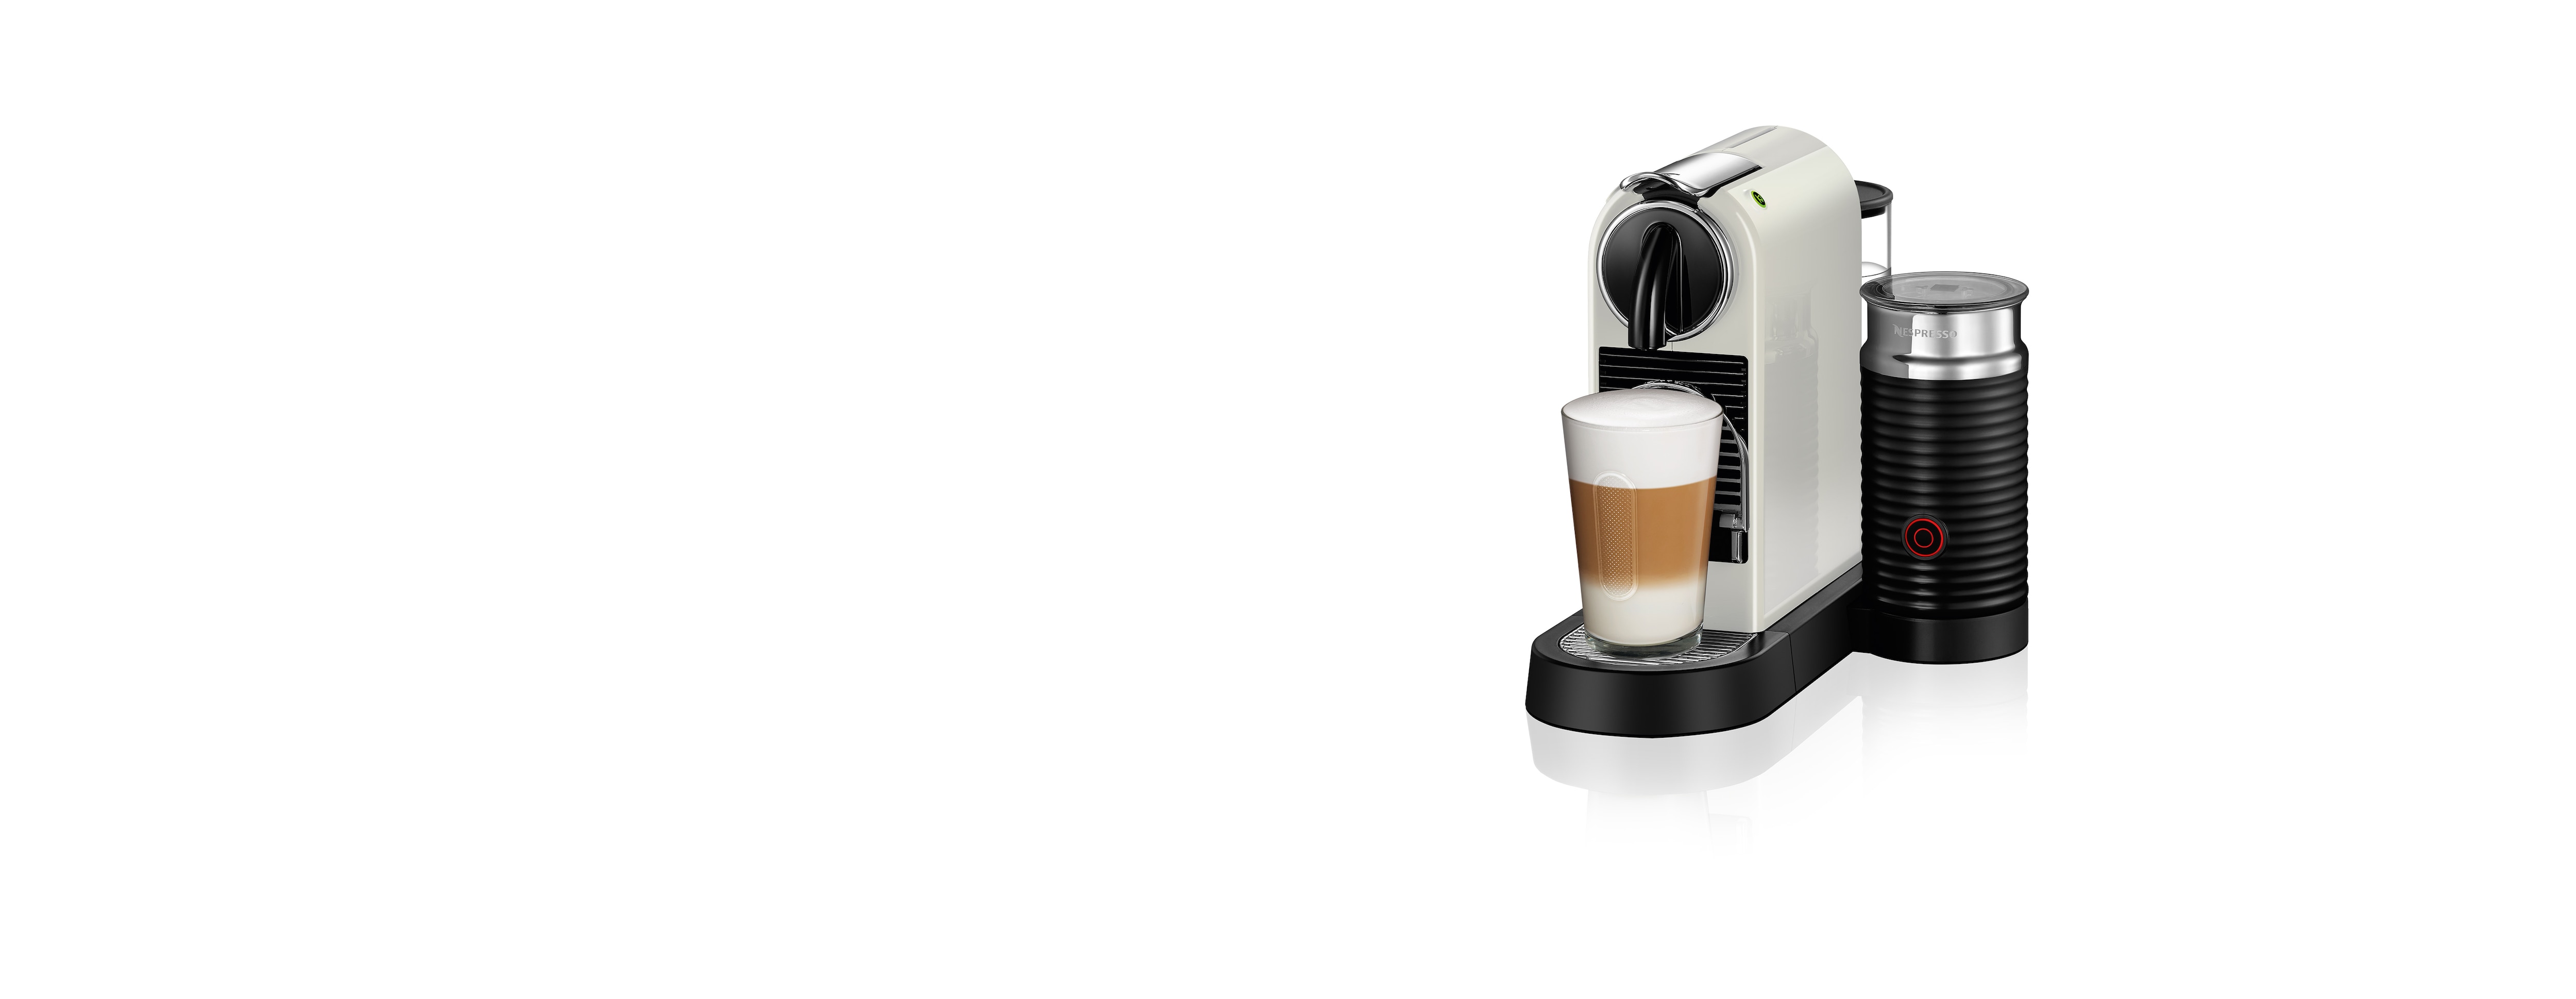 Magimix Citiz & Milk vasques exprimé Machine 1L CHROME   Coffee Makers vasques, exprimé Machine, chrome, Cup, Buttons, 1 l 